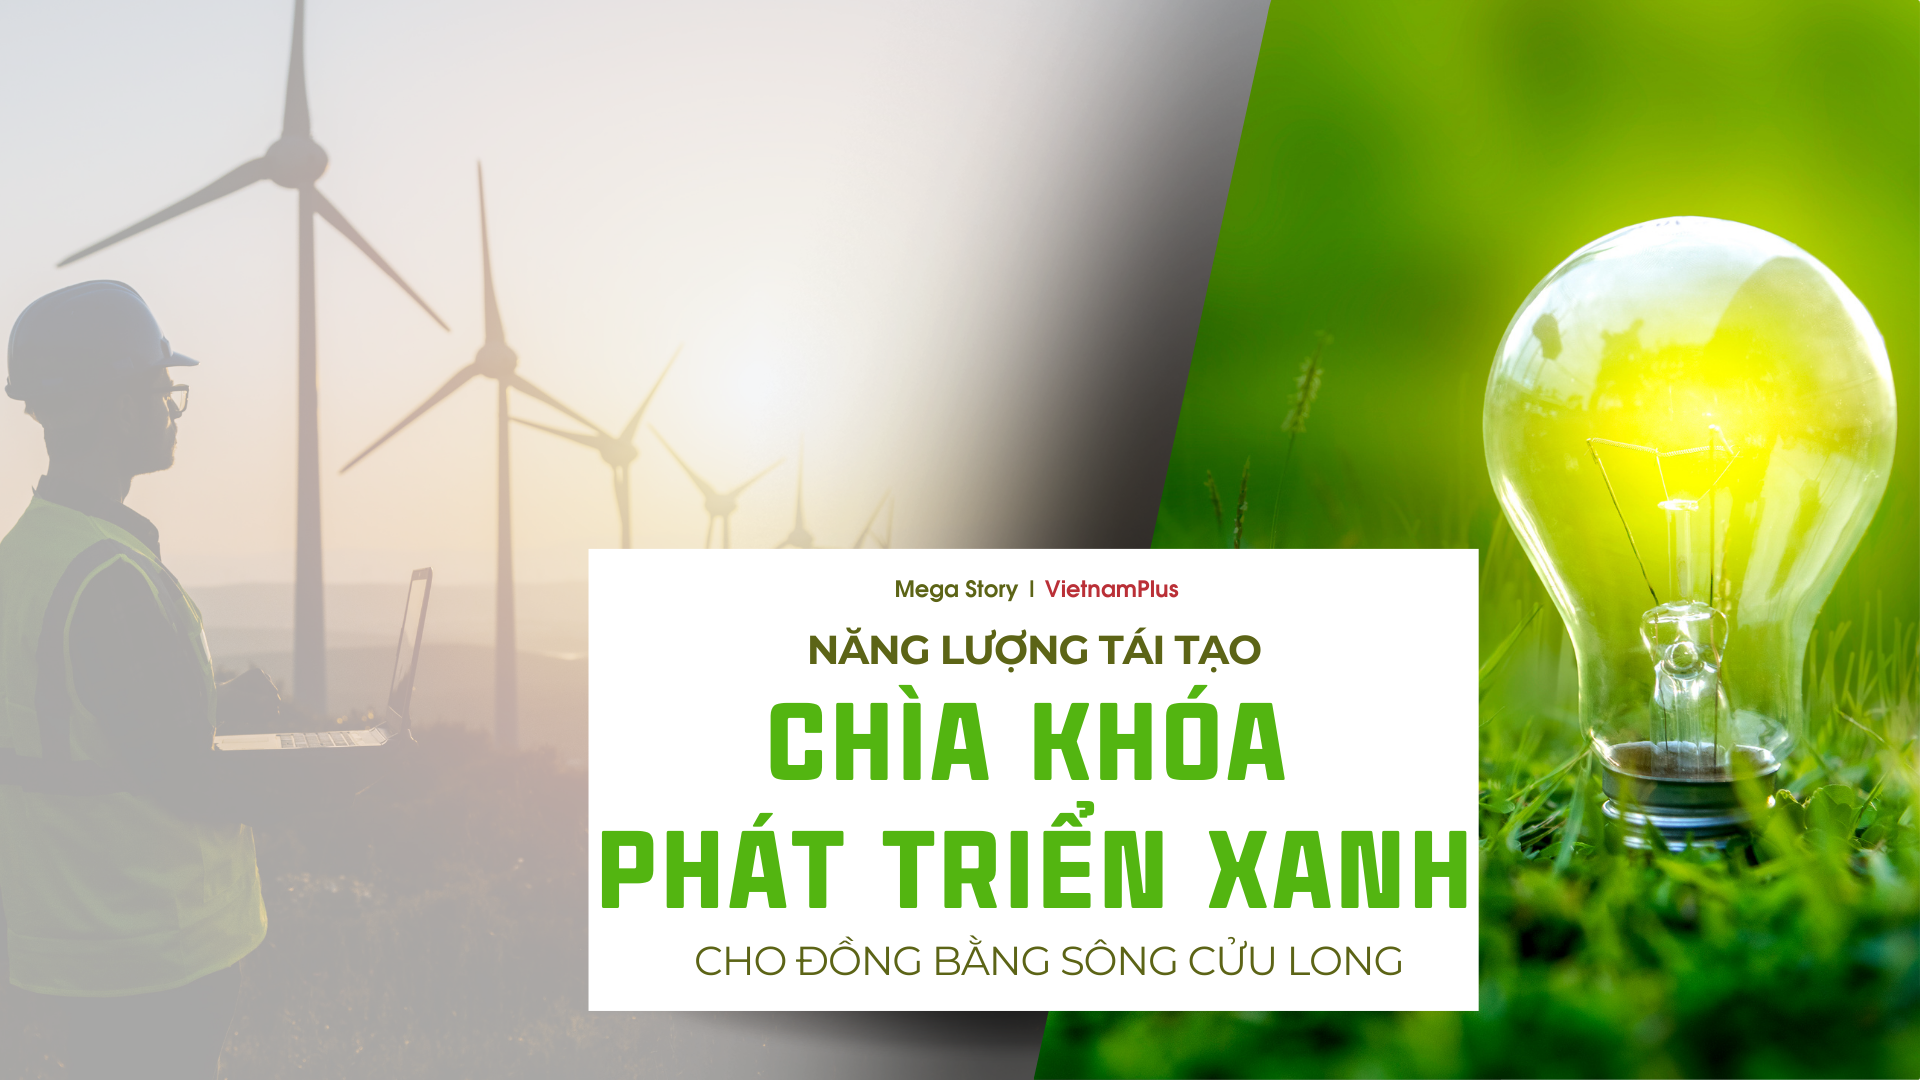 Bài 5: Năng lượng tái tạo - “chìa khóa” phát triển xanh cho Đồng bằng sông Cửu Long